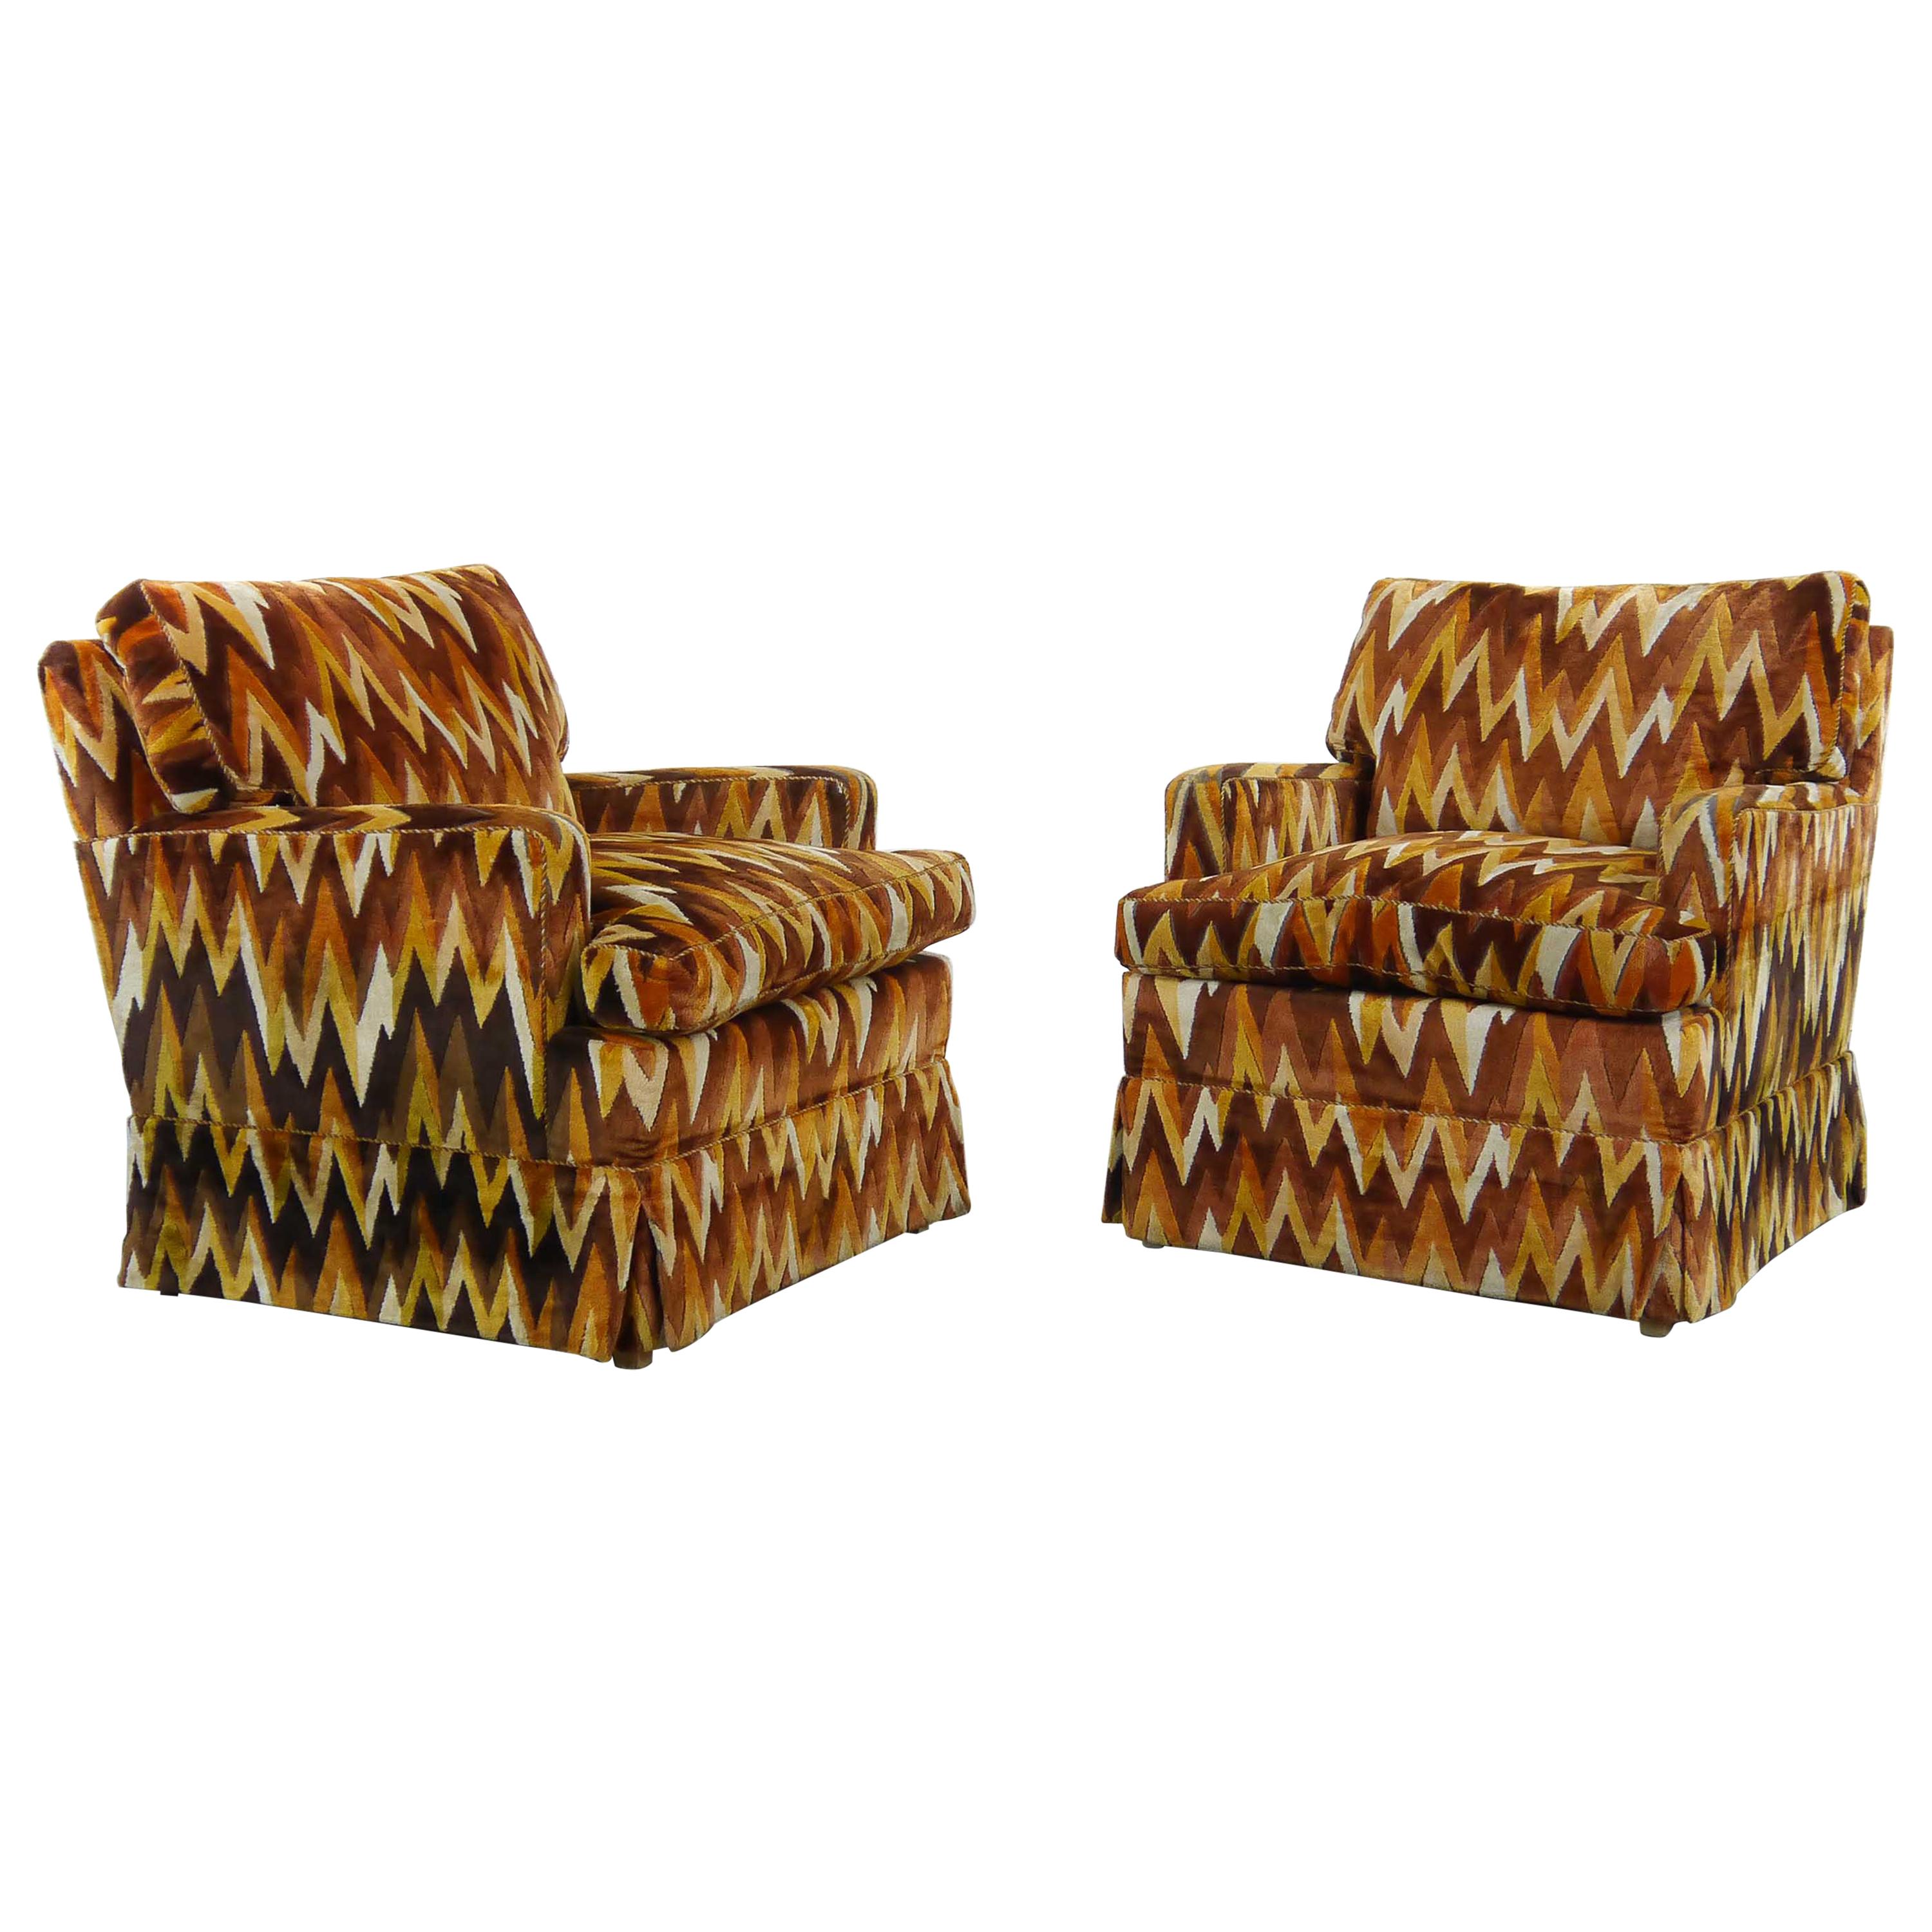 Set of 2 Vintage Missoni Style Zig Zag Chairs by Bielefelder Werkstätten